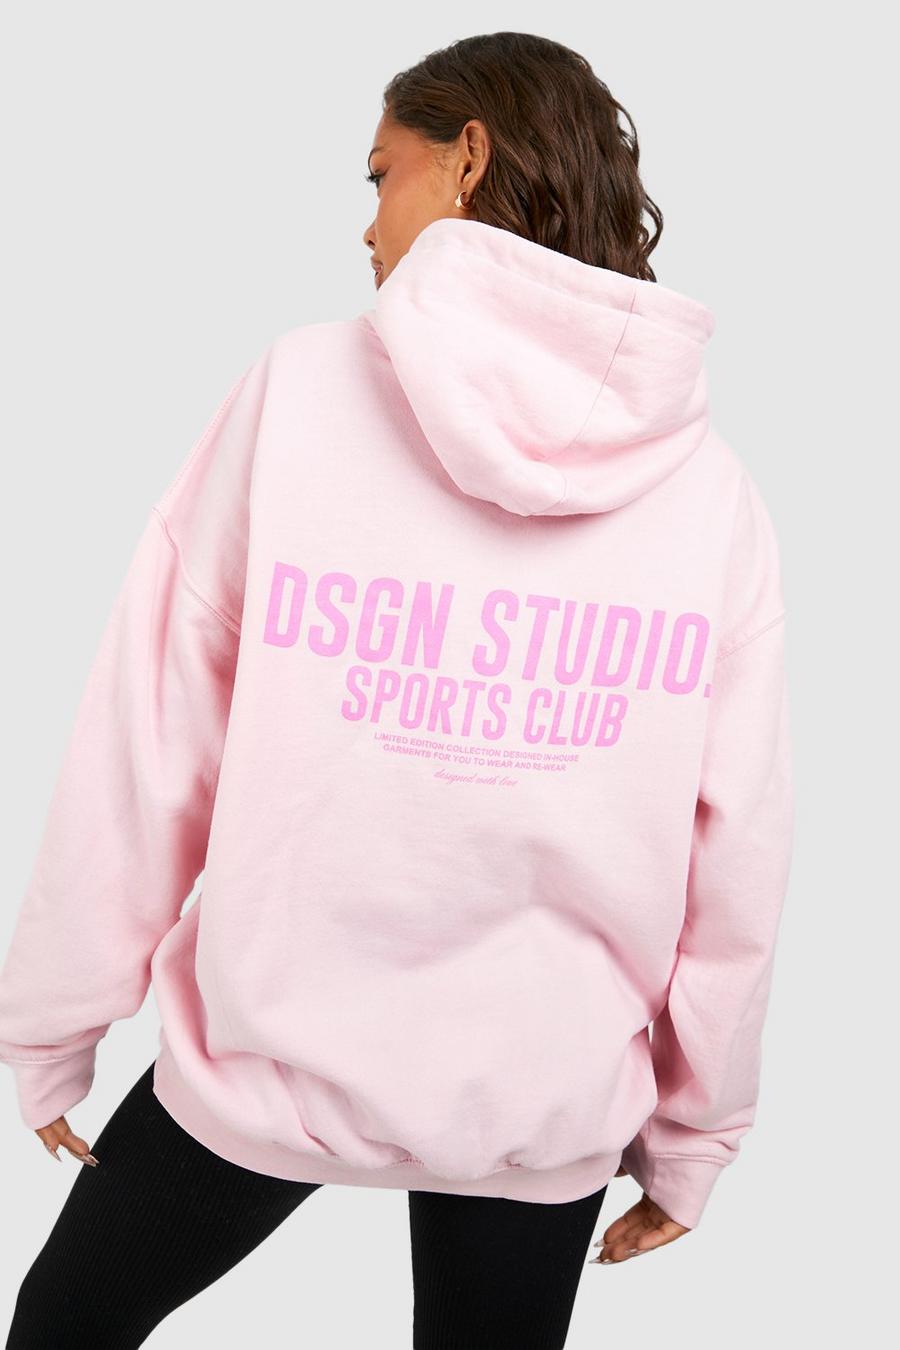 Felpa oversize con stampa di slogan Dsgn Studio Sports Club e cappuccio, Light pink image number 1